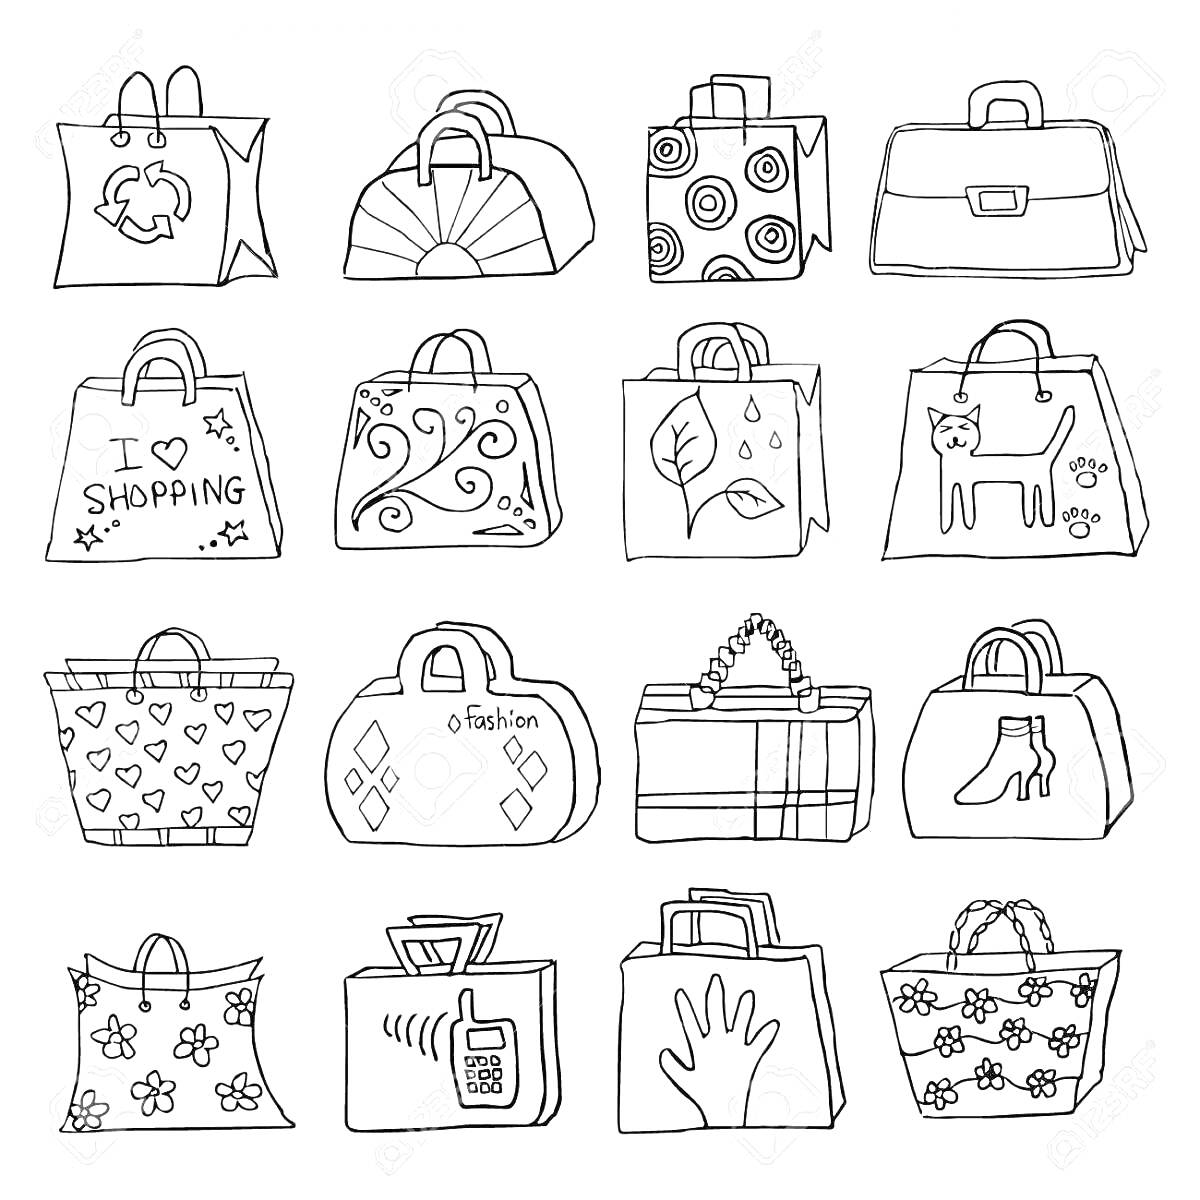 Раскраска Рисунки на сумках (сумка с символом переработки, сумка с полукруглым узором, сумка с кругами, сумка-портфель, сумка с надписью 